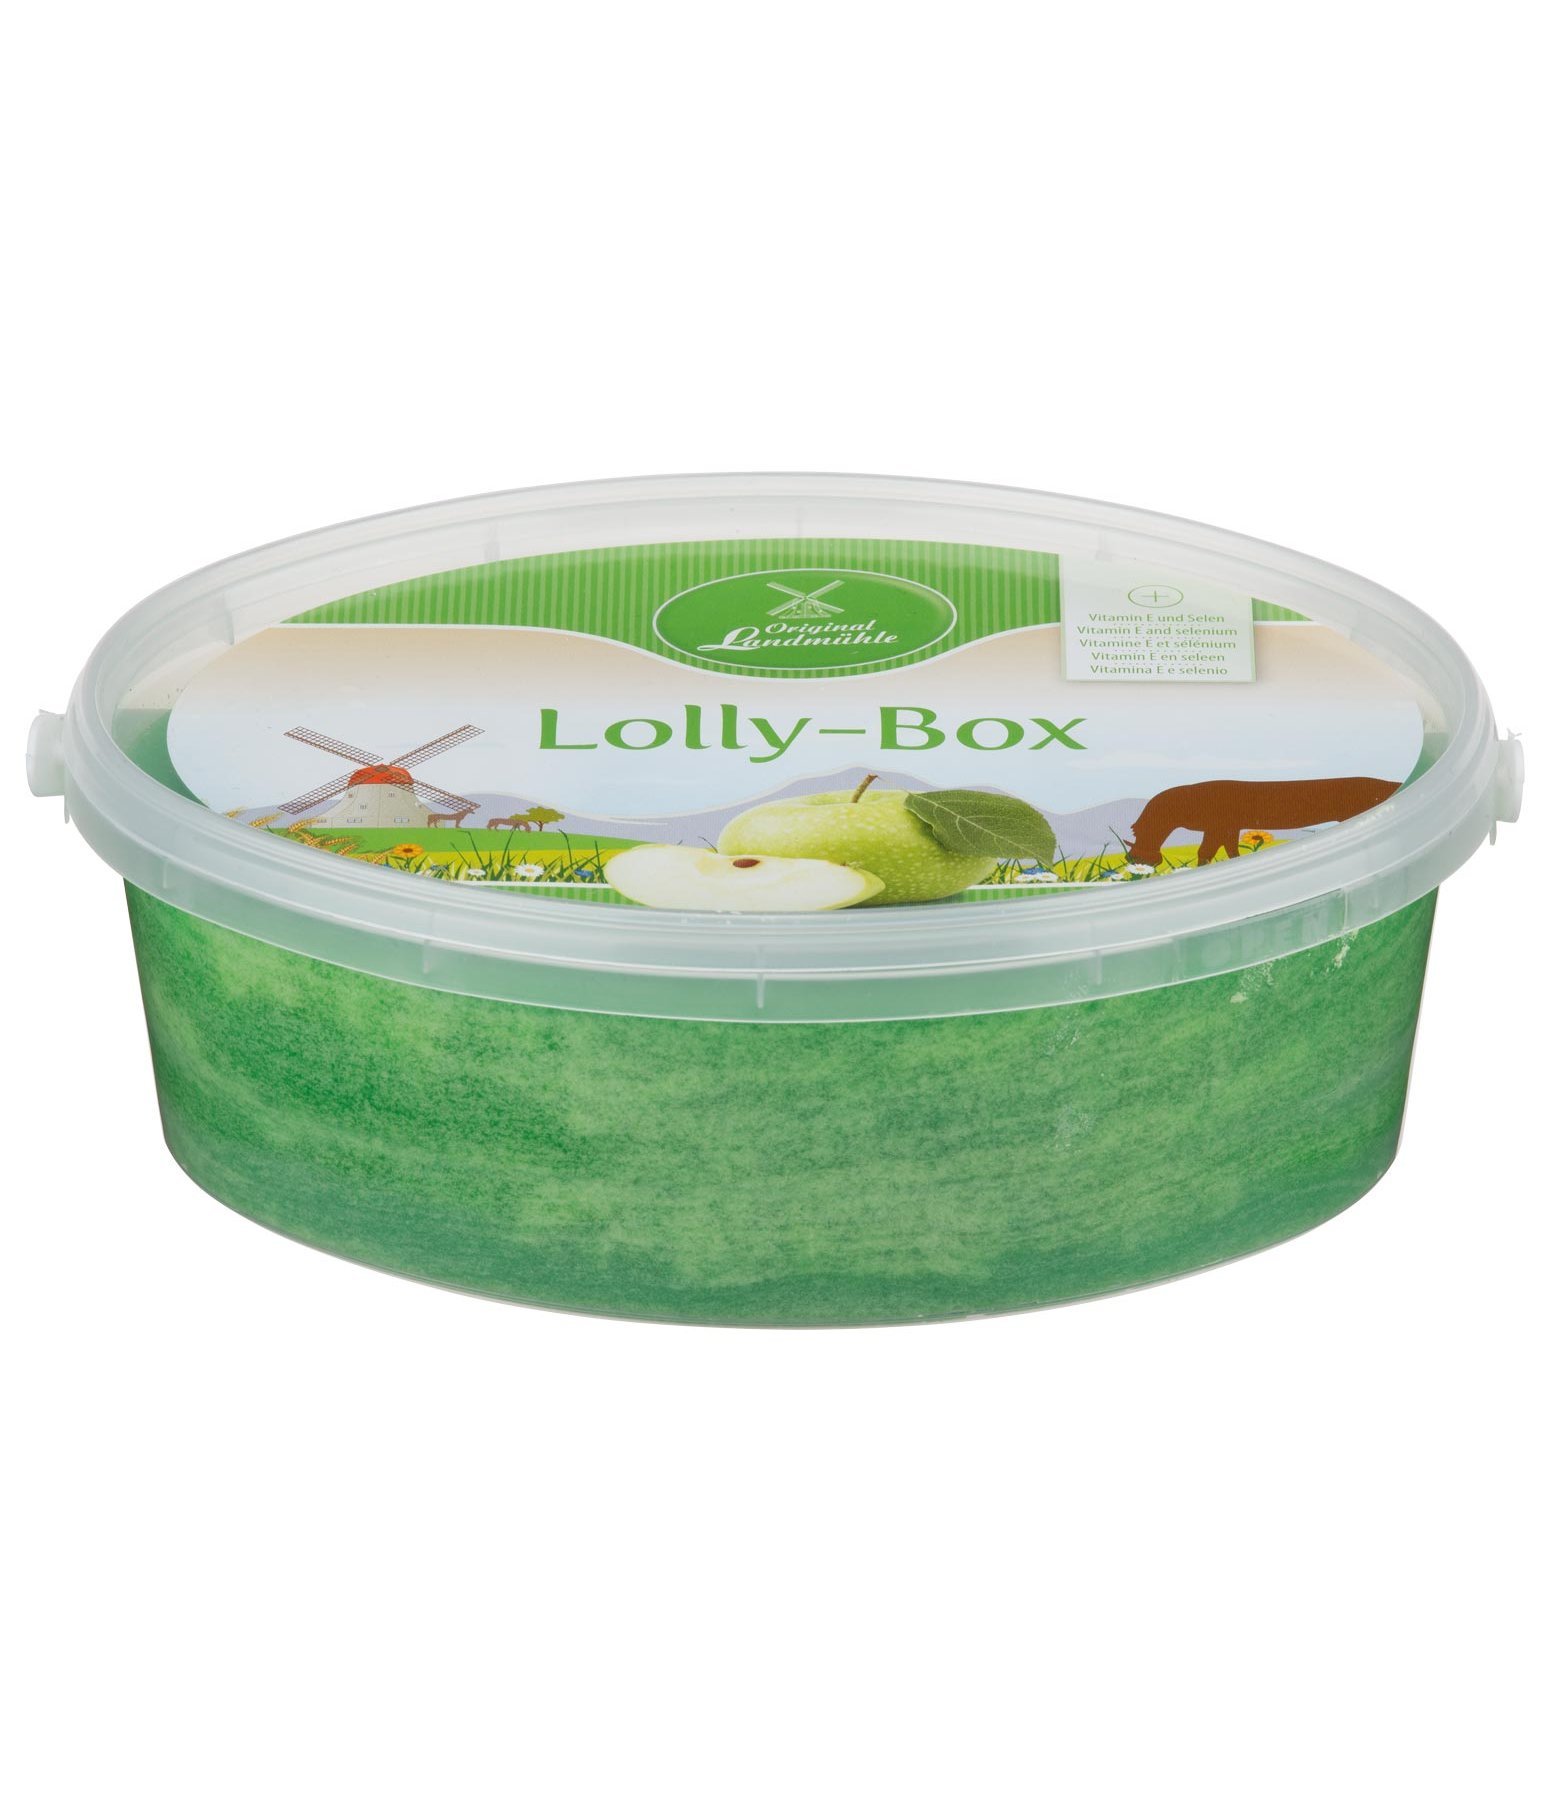 Lolly-Box Apfel